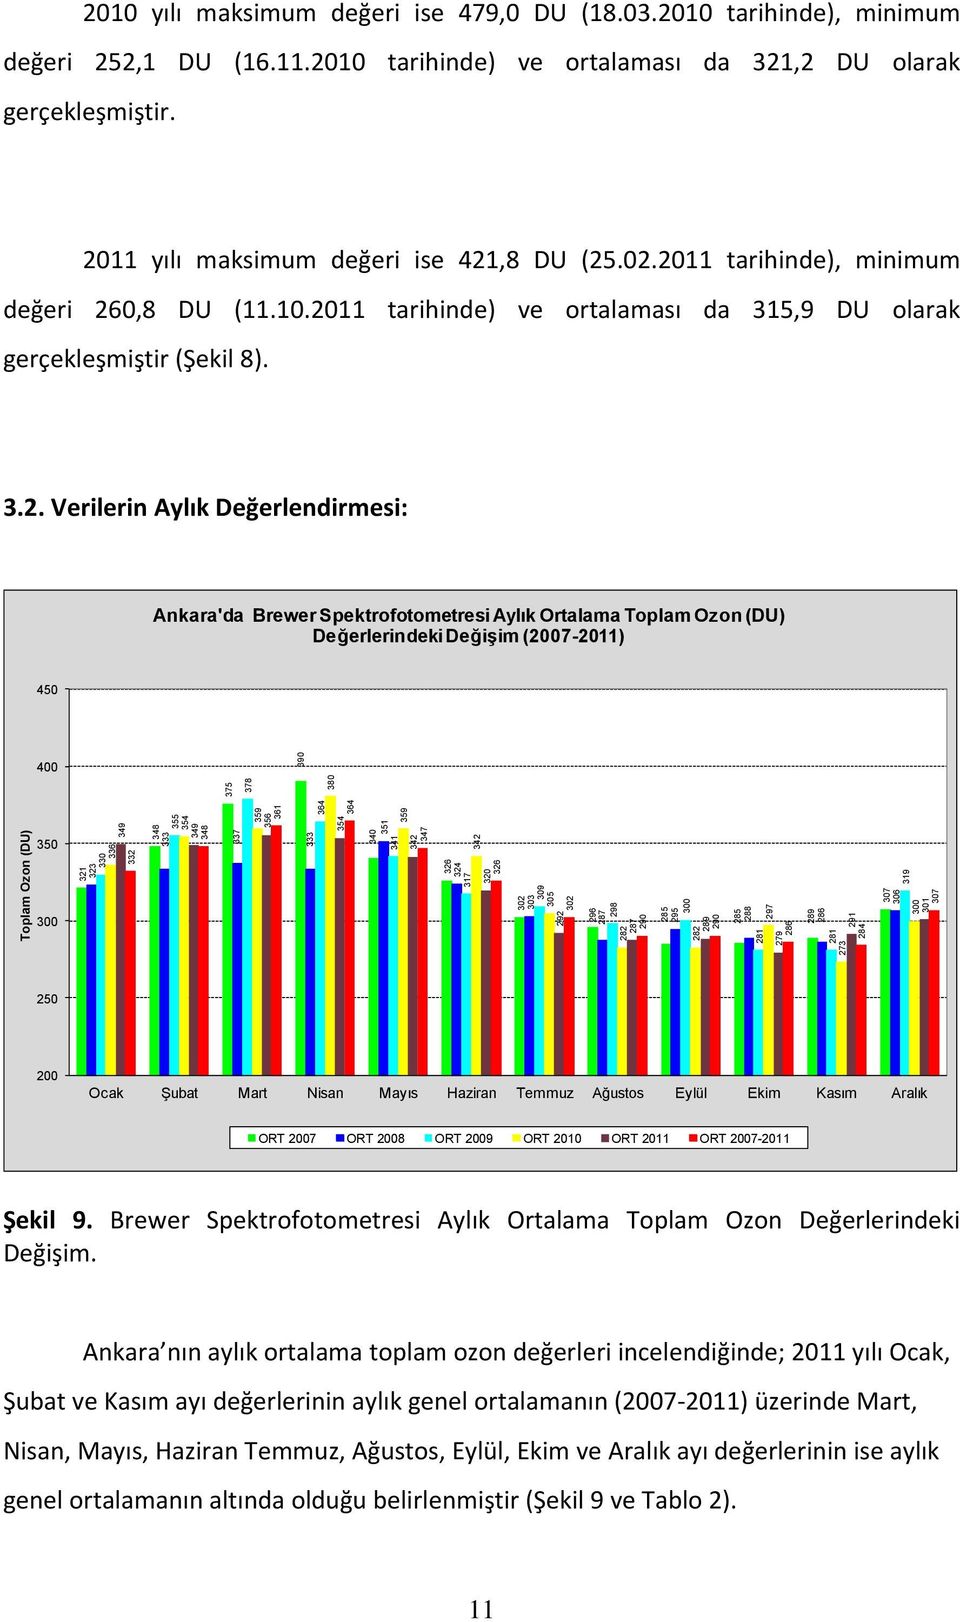 Değerlendirmesi: Ankara'da Brewer Spektrofotometresi Aylık Ortalama Toplam Ozon (DU) Değerlerindeki Değişim (2007-2011) 450 400 375 378 390 380 Toplam Ozon (DU) 350 300 321 323 330 336 349 332 348